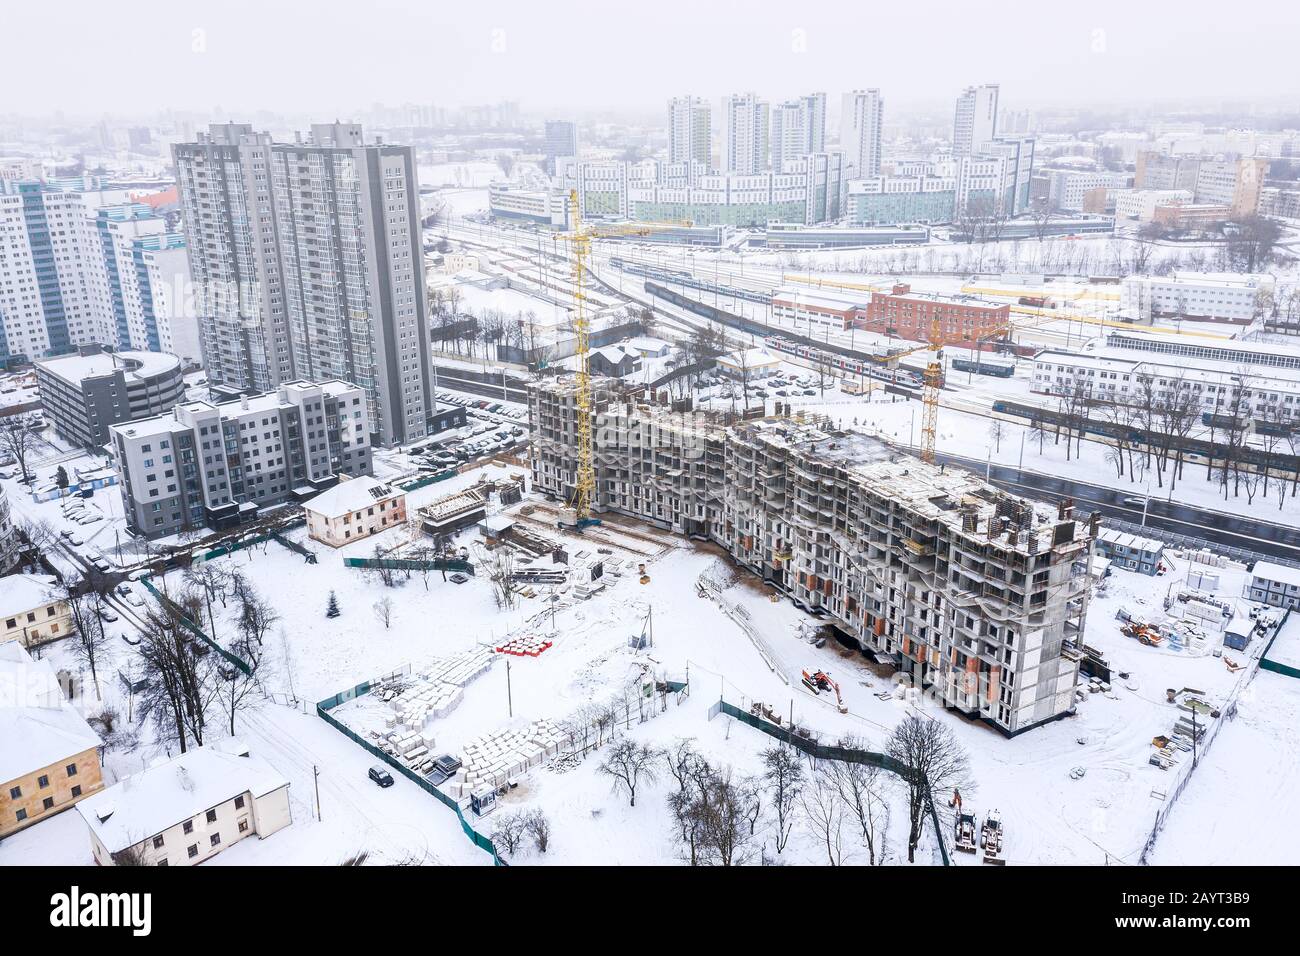 Bâtiment résidentiel en construction sur fond gris du ciel d'hiver. Vue panoramique aérienne de la ville de Minsk, en Biélorussie Banque D'Images